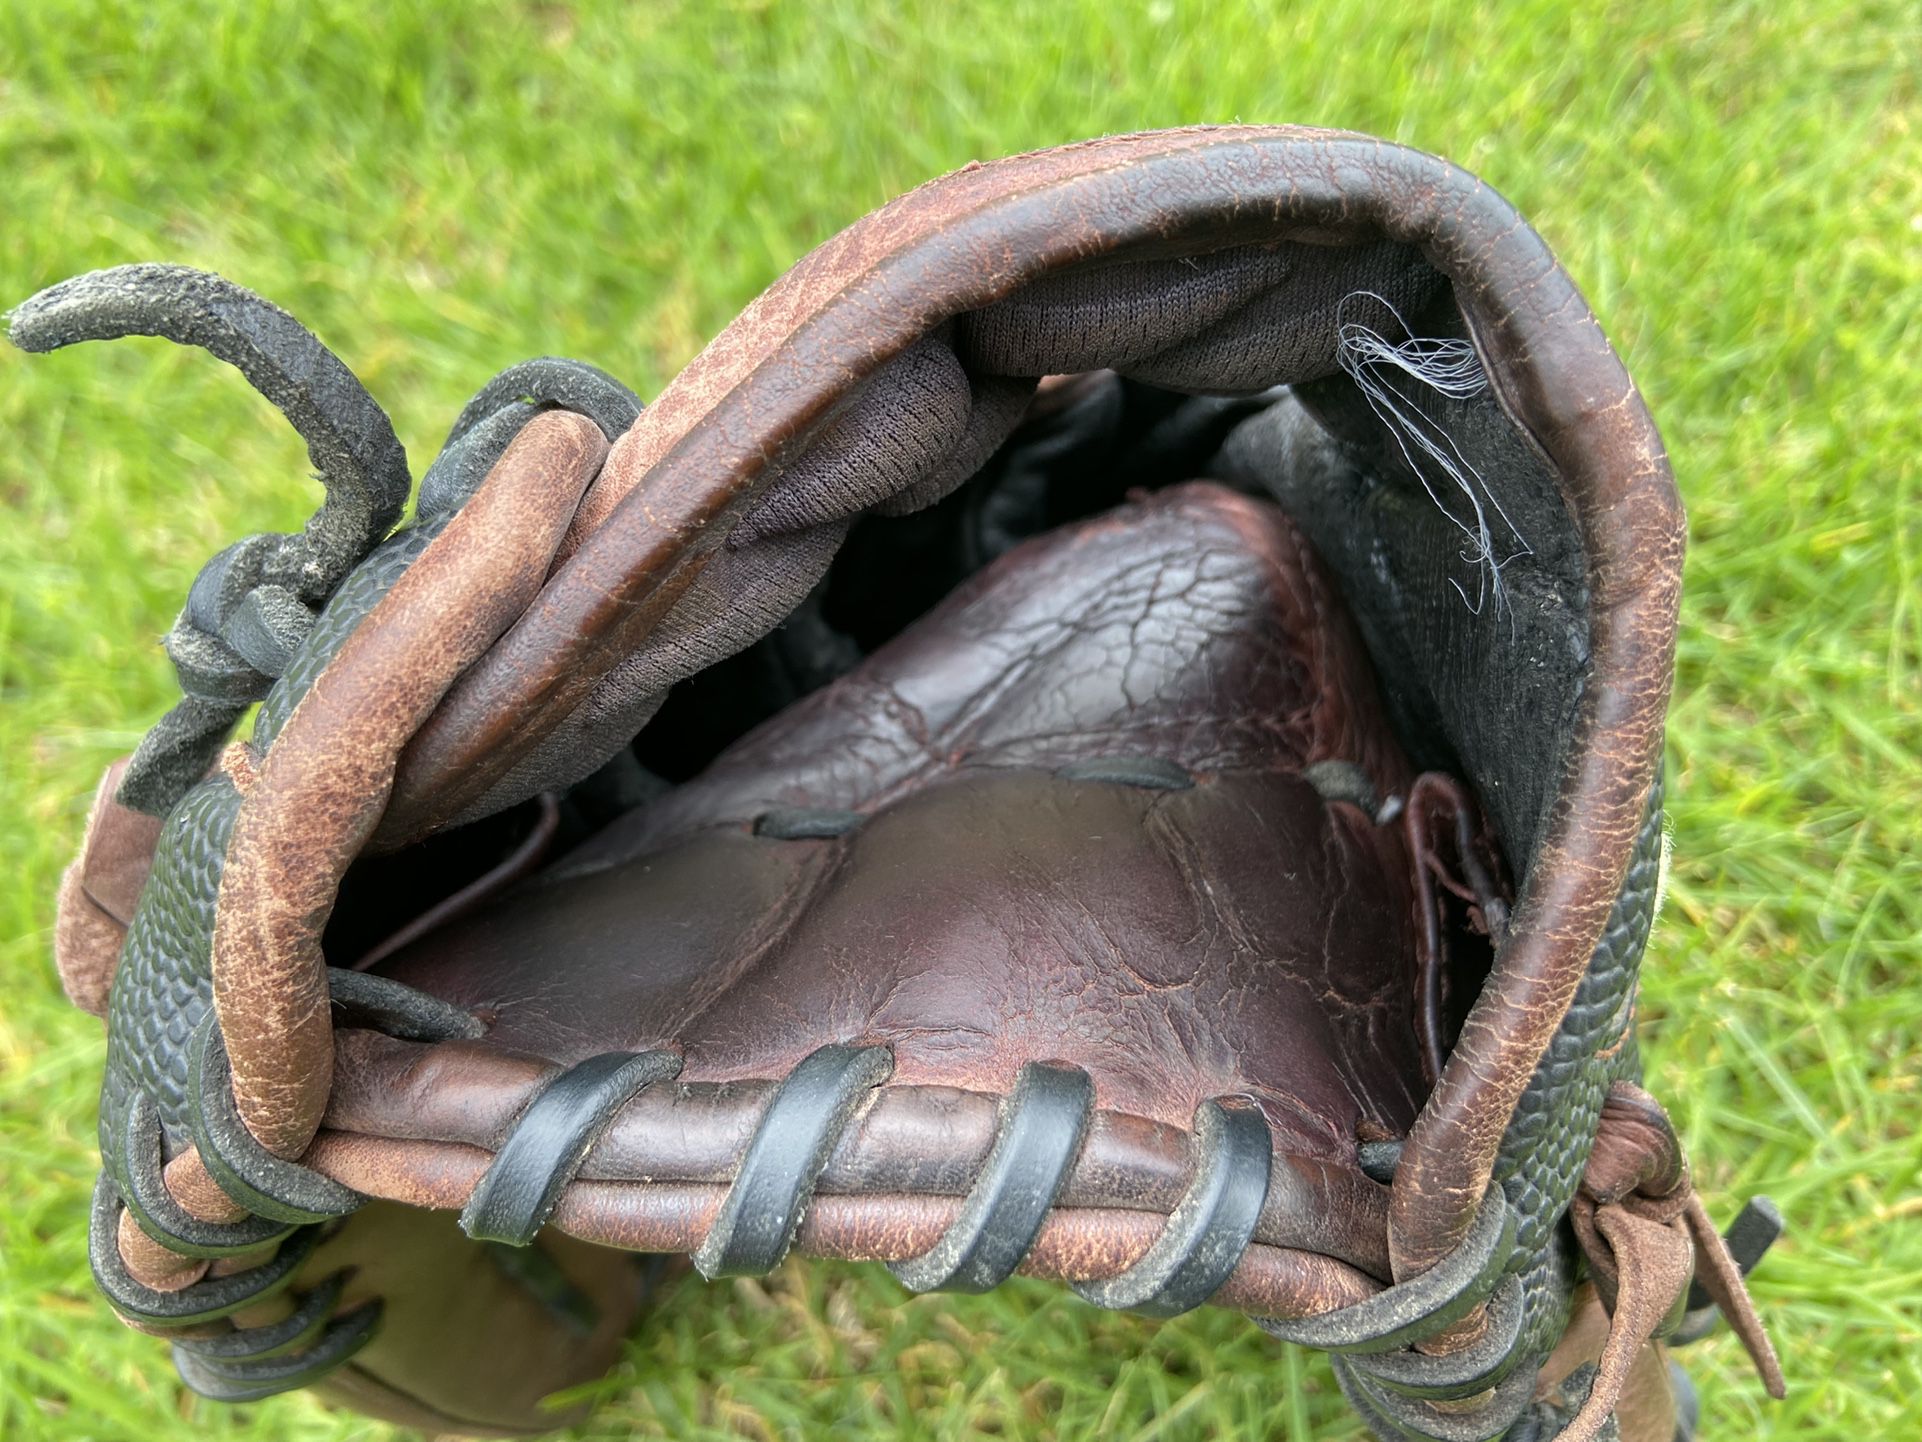 Wilson A1000 Baseball Glove